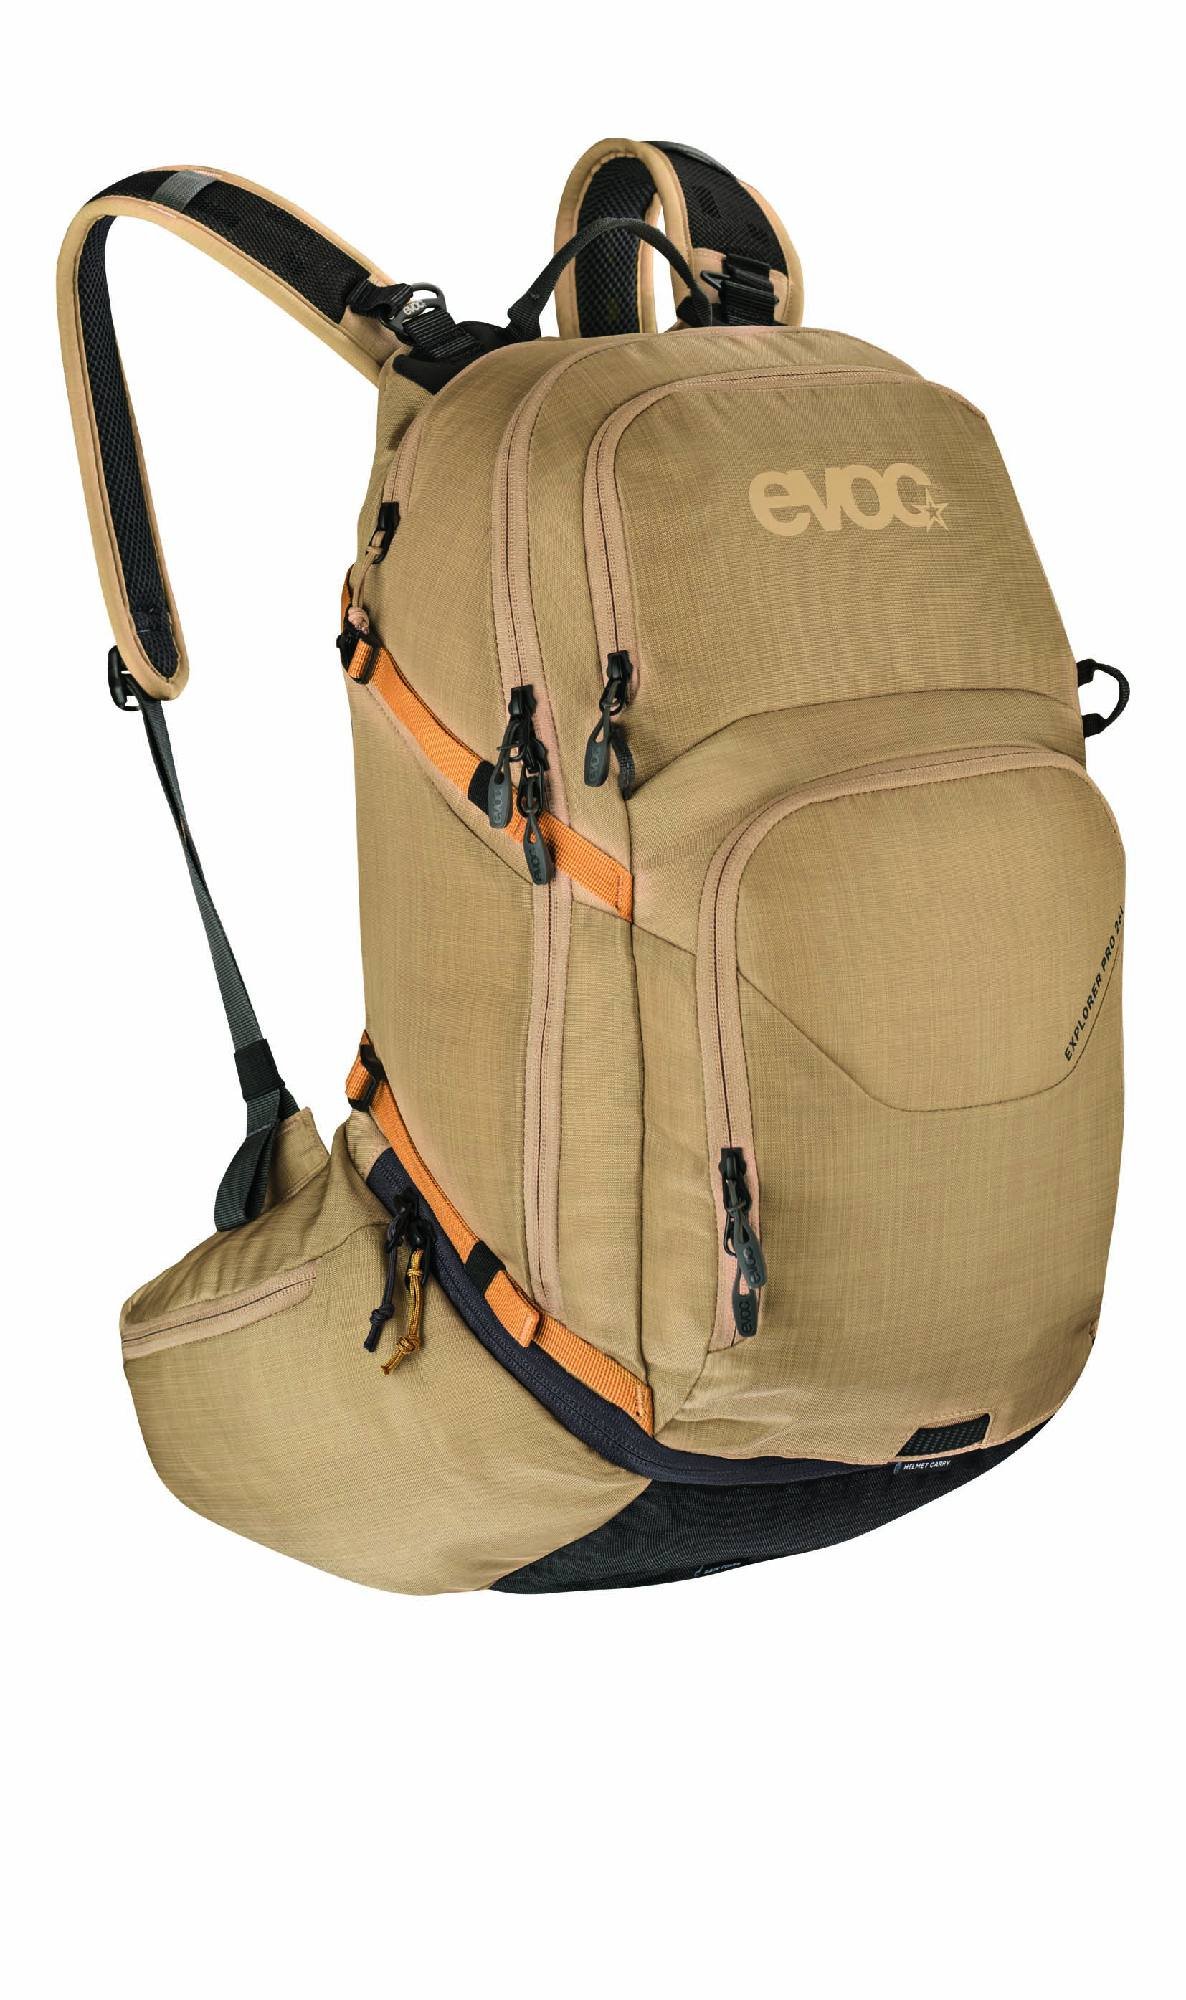 EVOC Explorer Pro 26 L